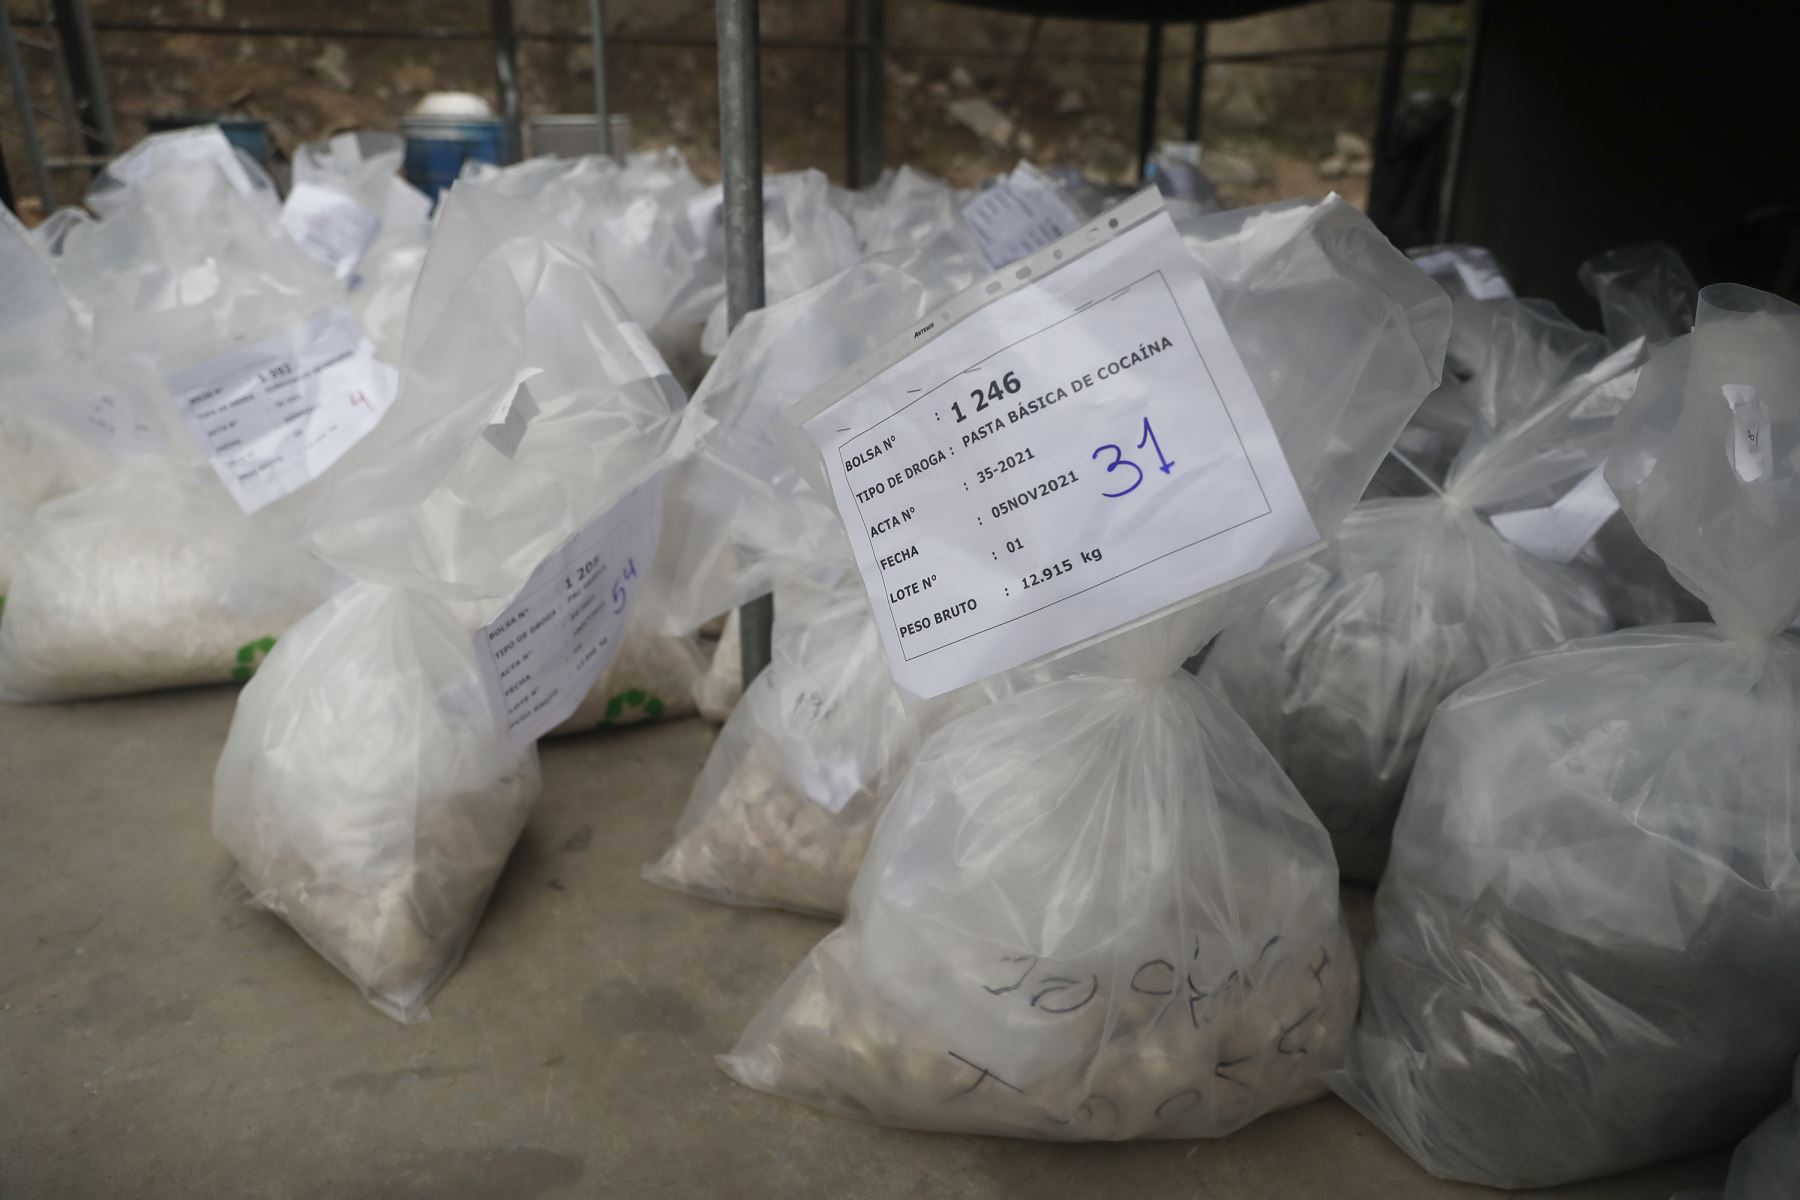 Mininter ejecuta proceso de destrucción 13 toneladas de droga decomisada, en la sede de la DIROES. Esta cifra se suman más de 83 toneladas de drogada destruida durante el 2021. Foto: ANDINA/Renato Pajuelo